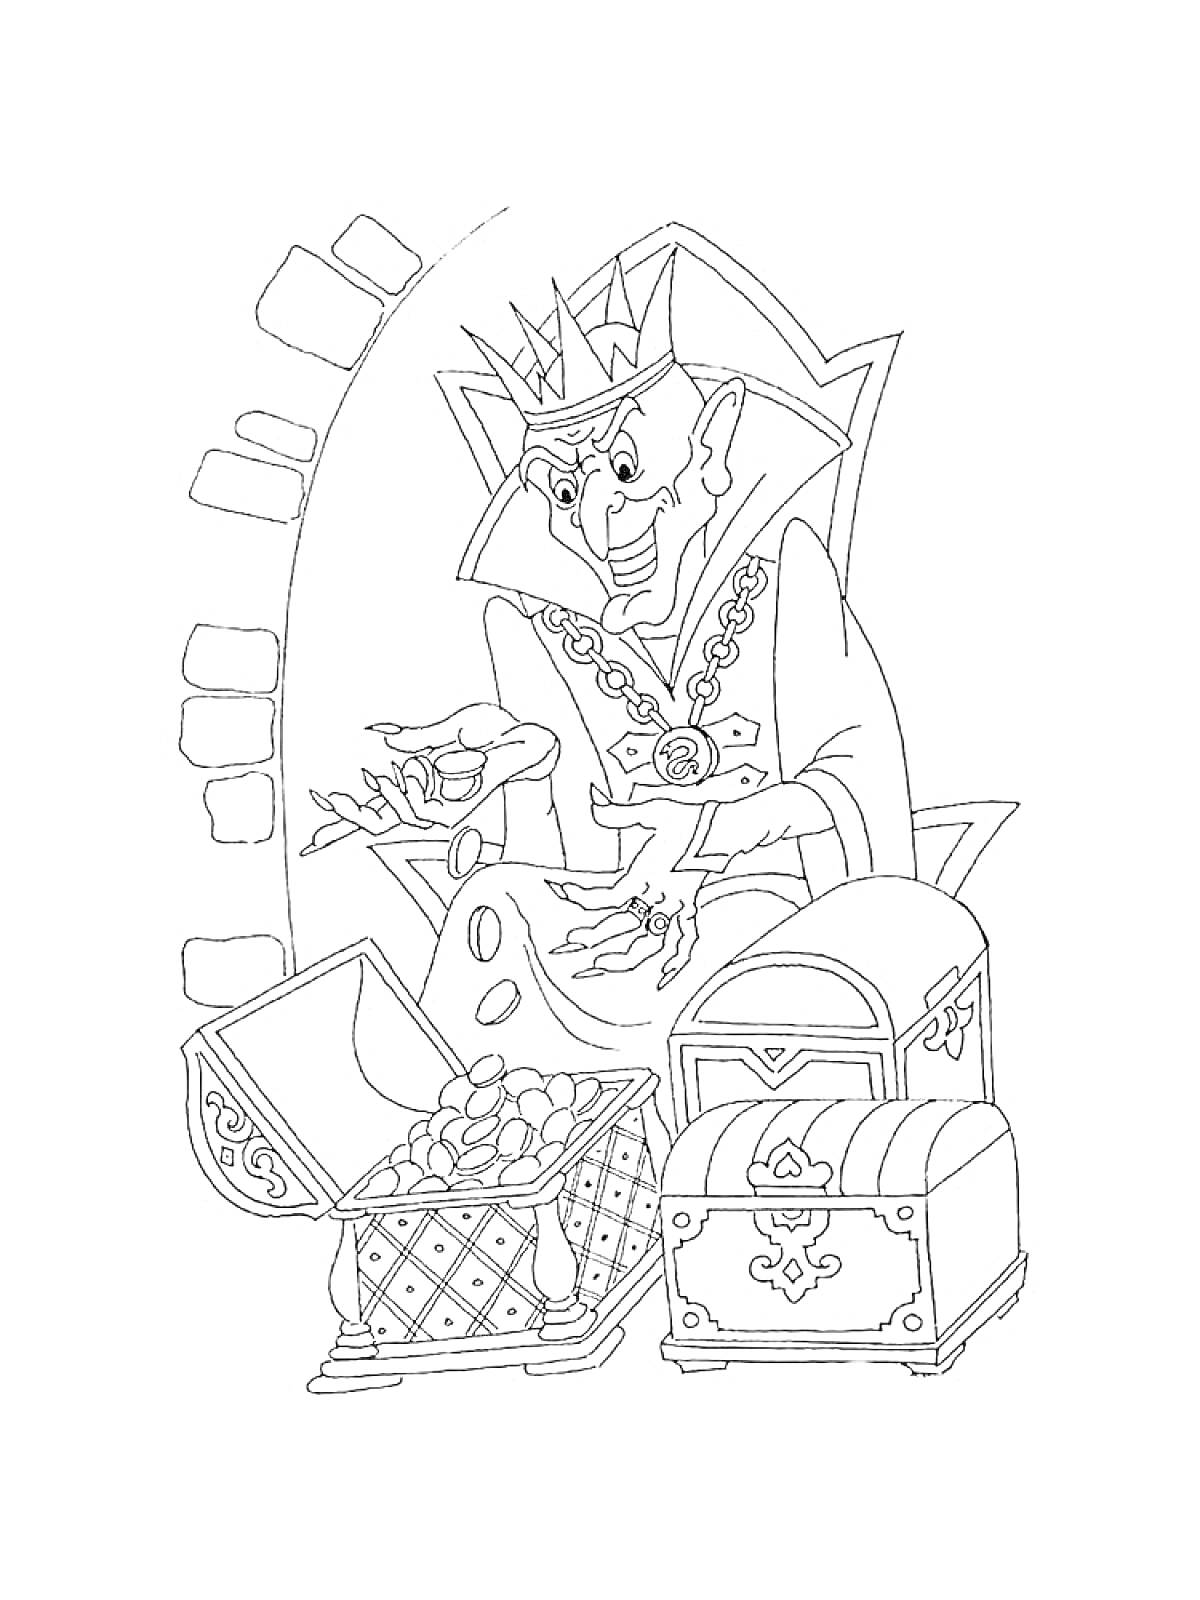 Раскраска Кощей Бессмертный с короной и сундуками, полными сокровищ, в замке